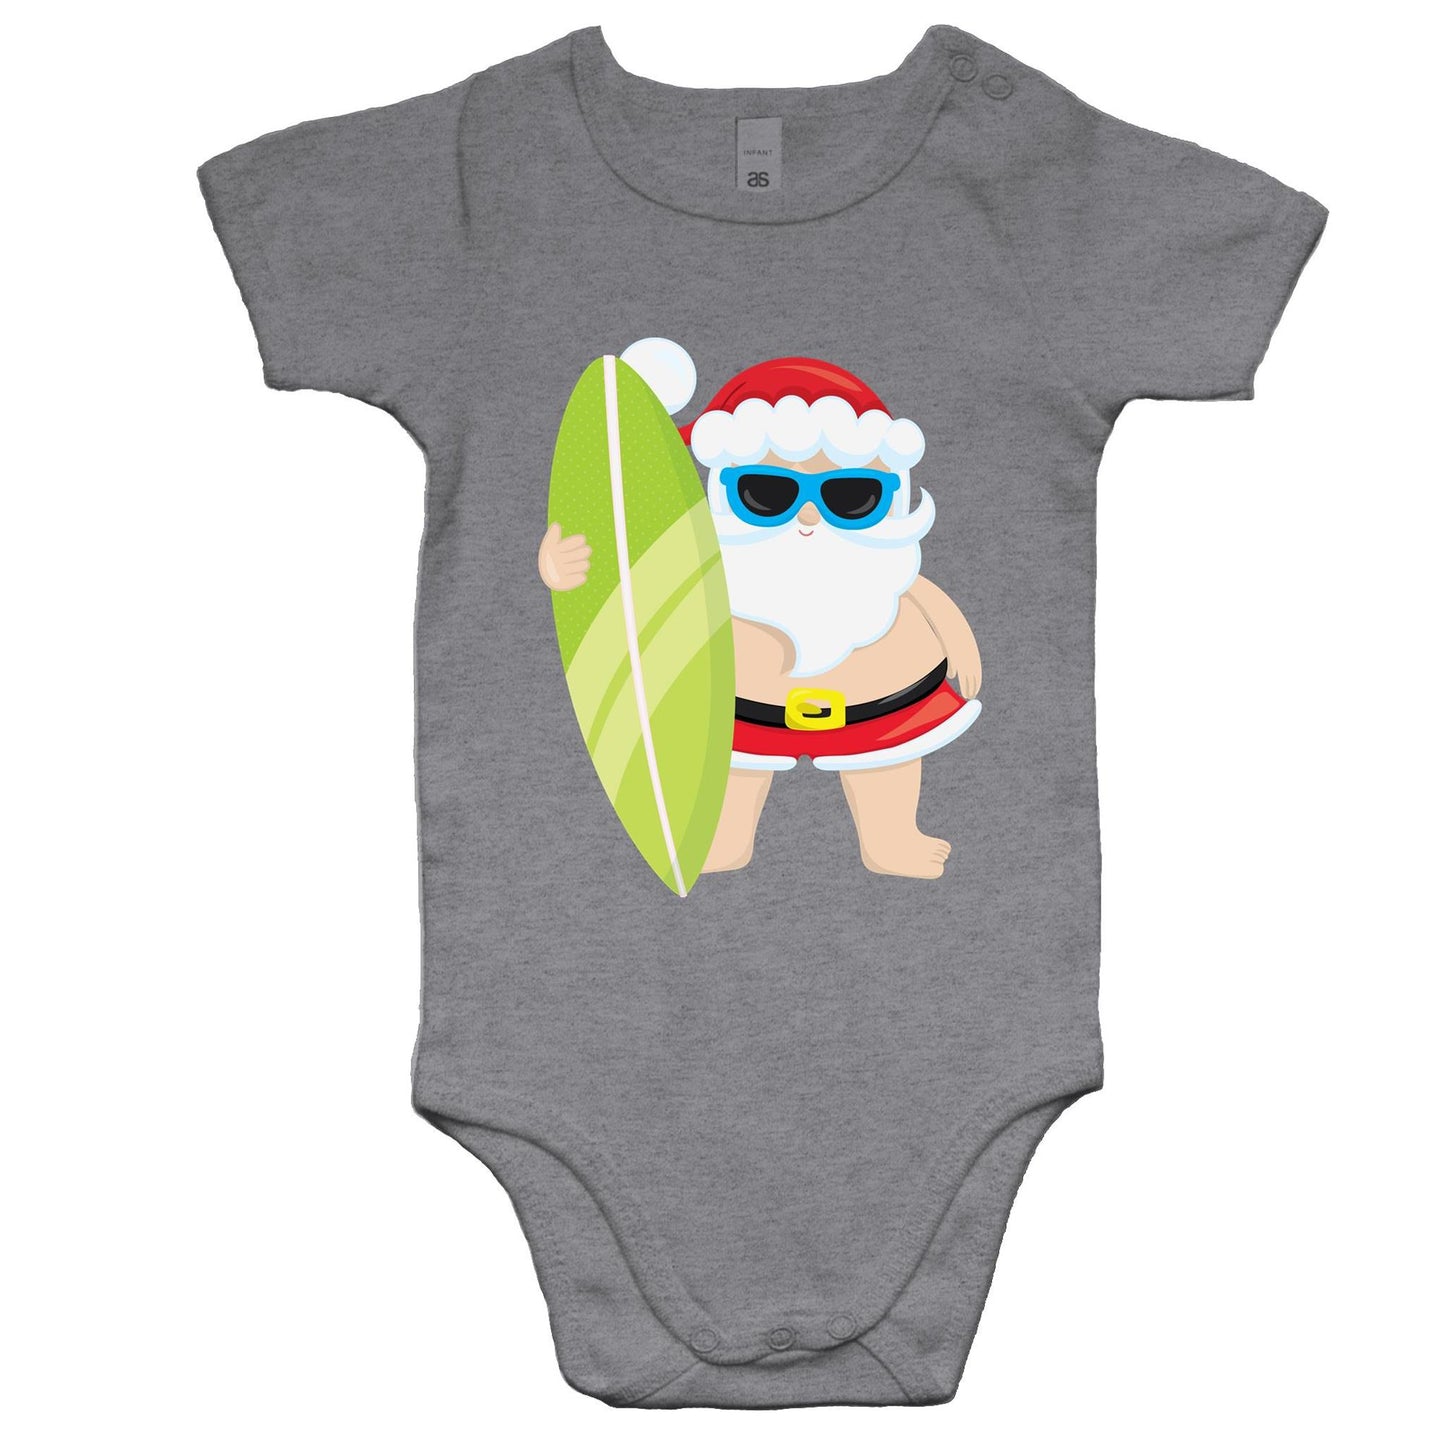 Surf Santa - Baby Onesie Romper Grey Marle Christmas Baby Bodysuit Merry Christmas